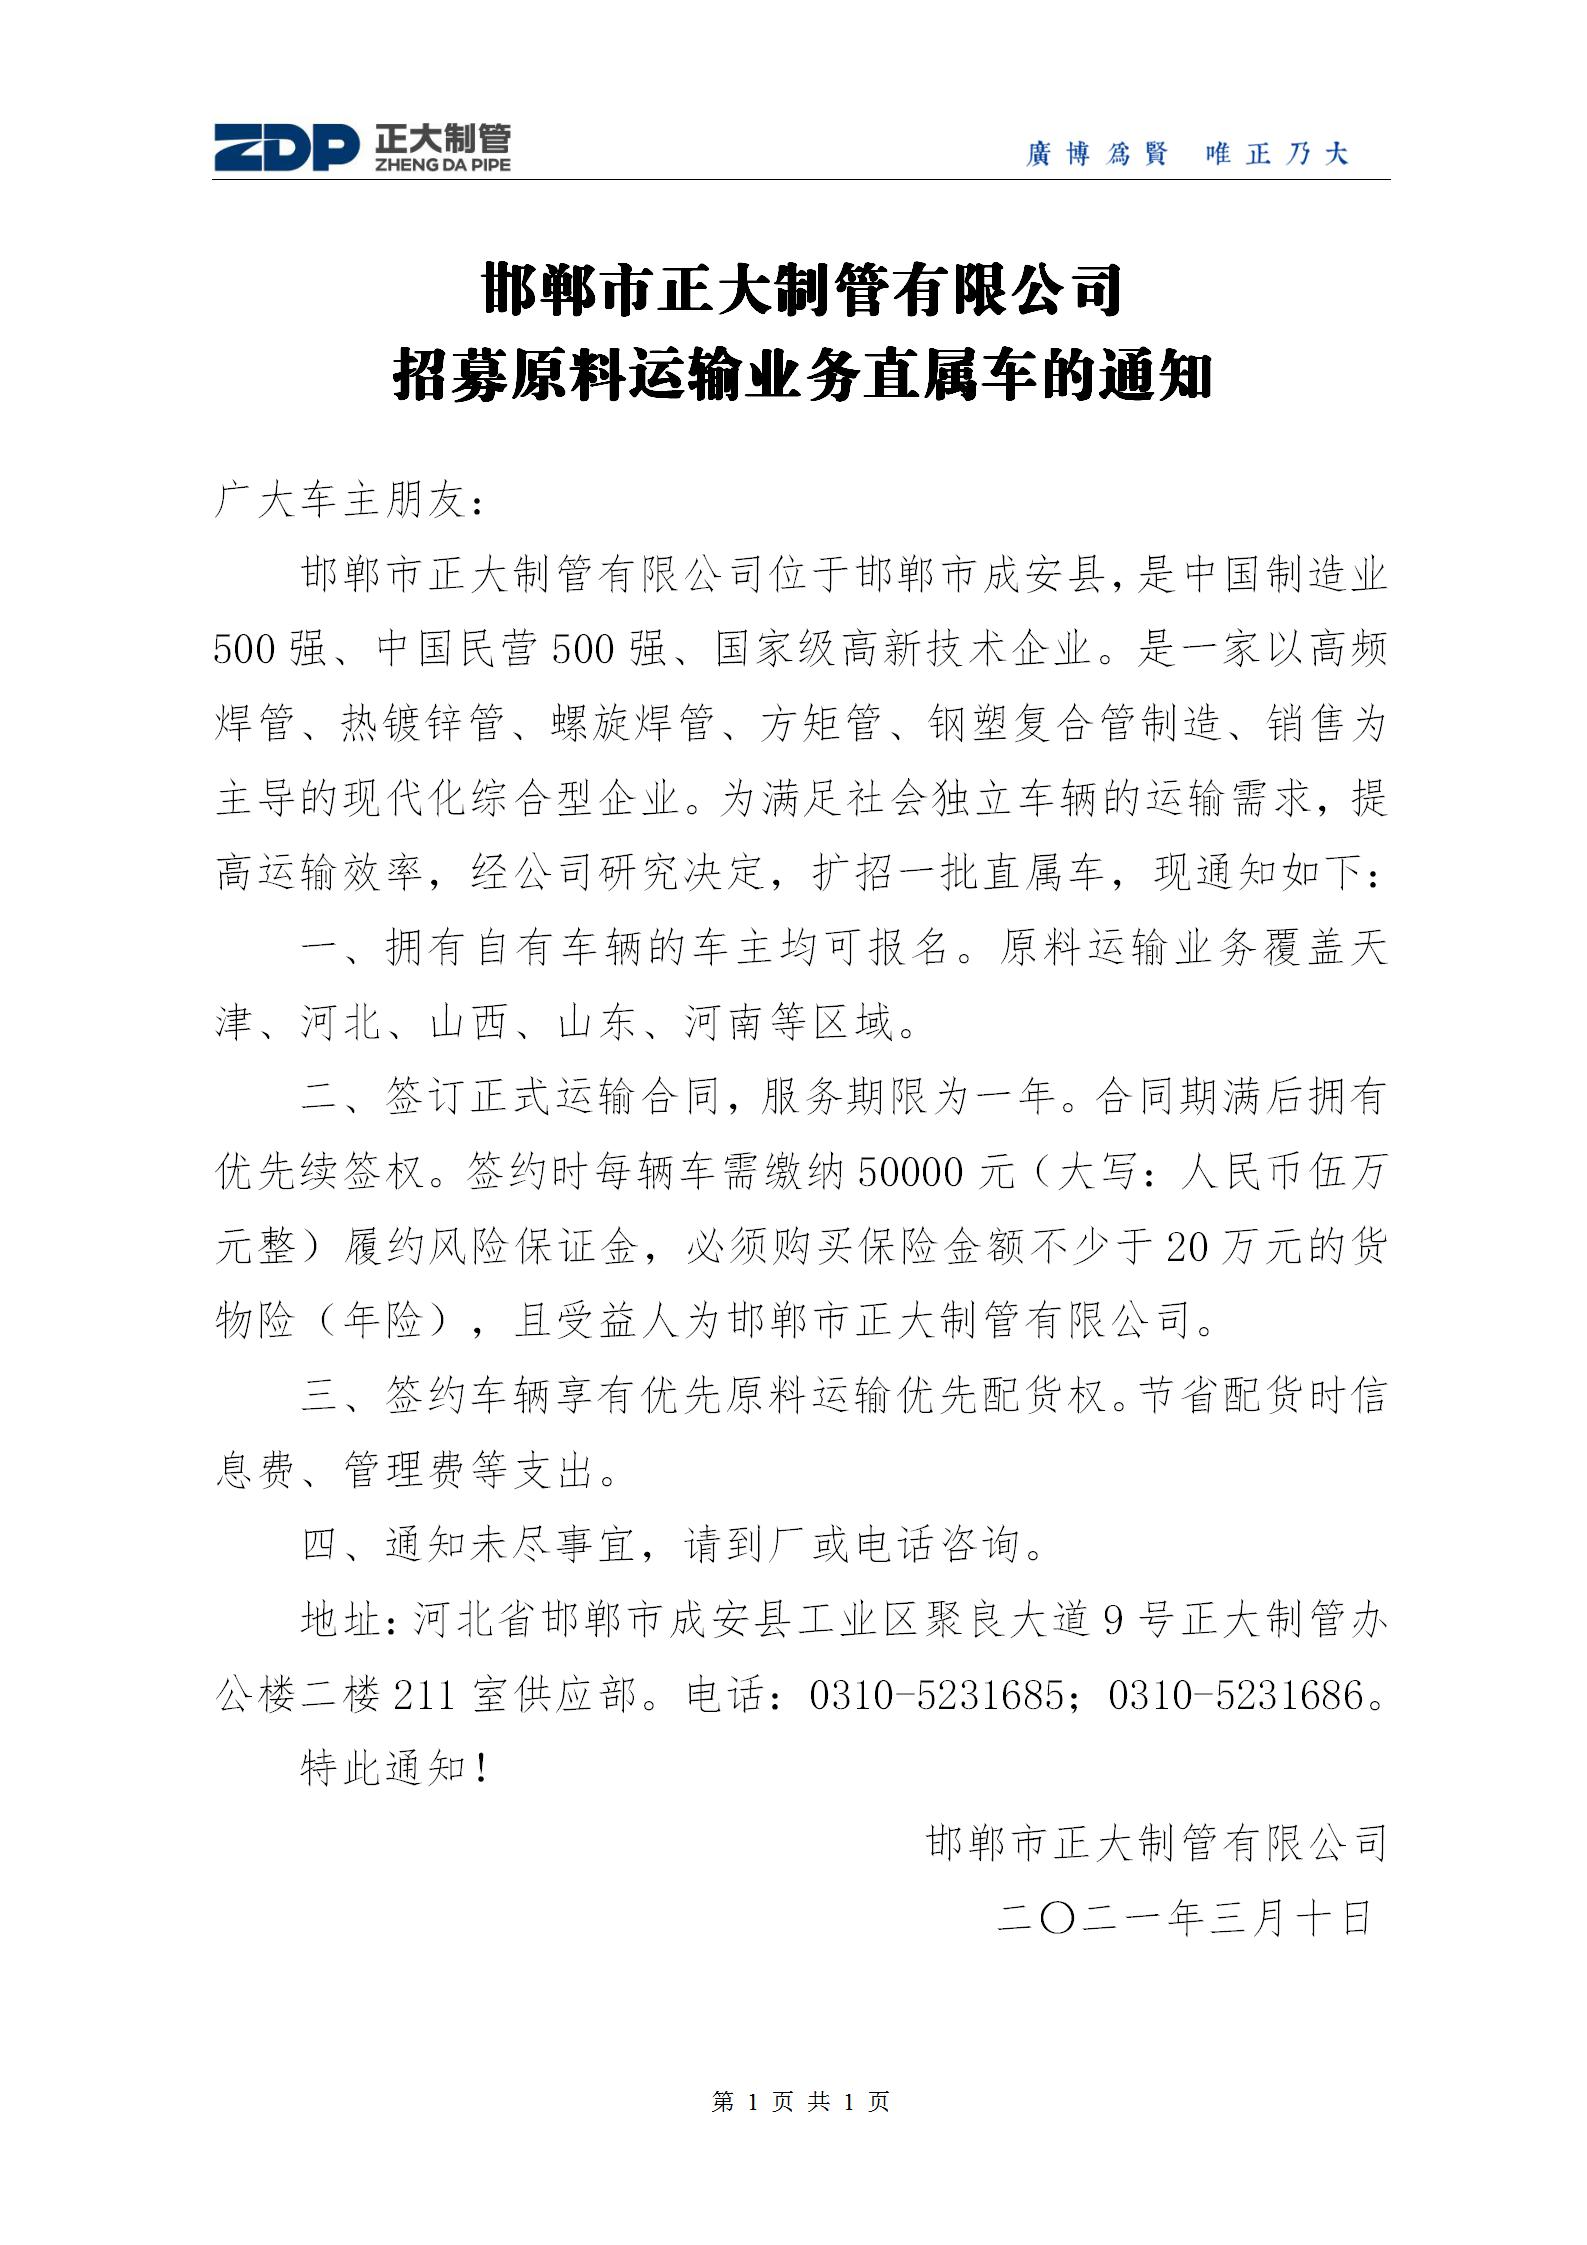 邯郸市正大制管有限公司招募原料运输业务直属车的通知